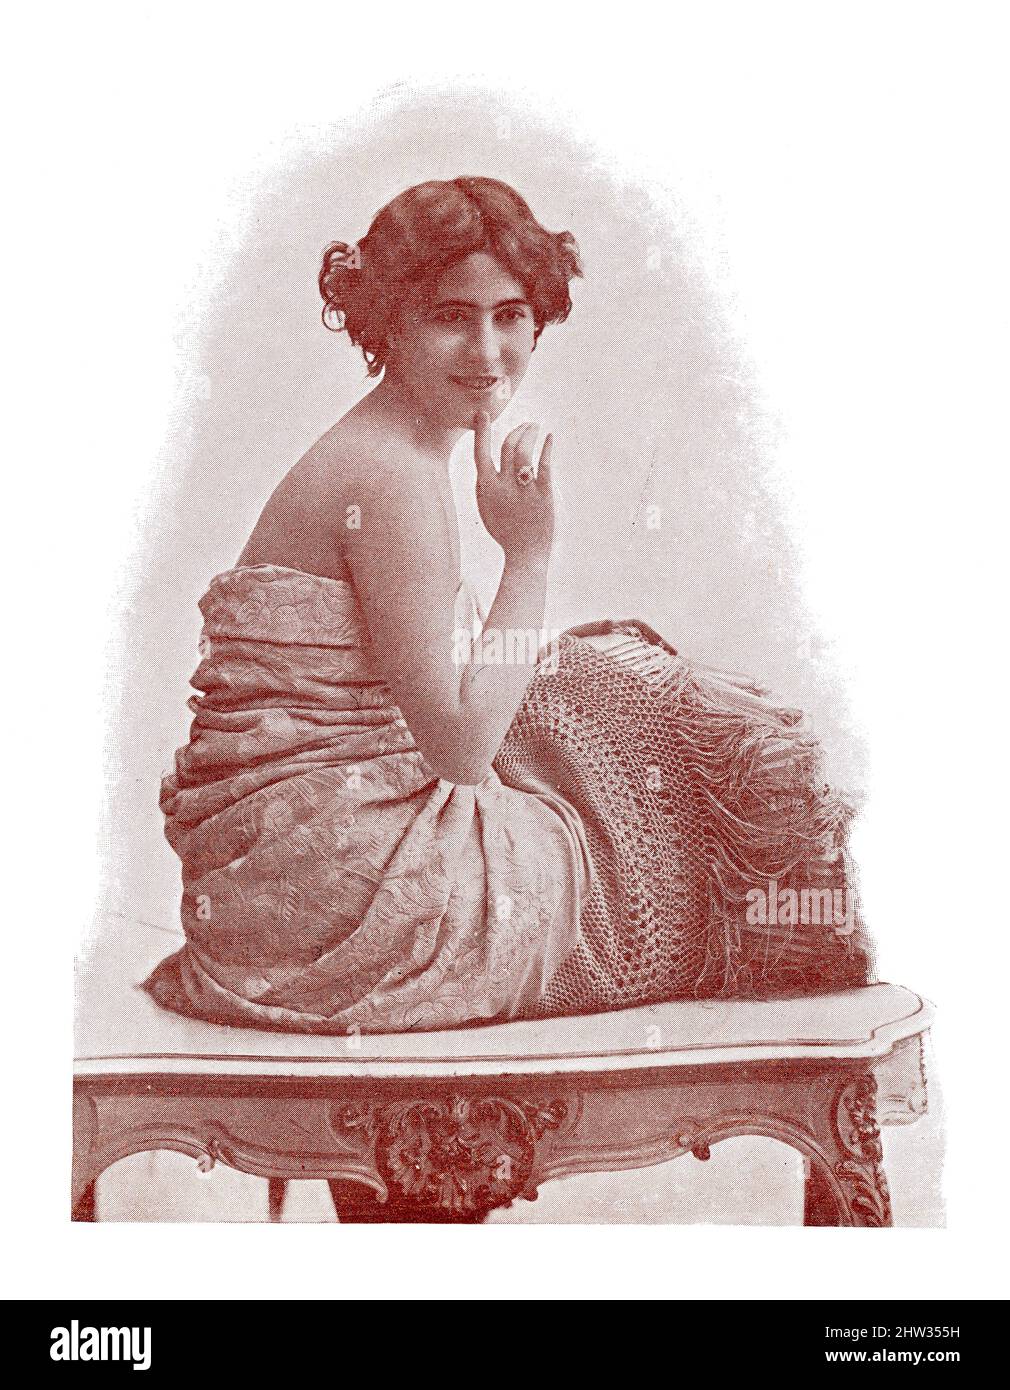 Ritratto di una ballerina spagnola. Immagine della rivista teatrale francese-tedesca 'Das Album', 1898. Foto Stock